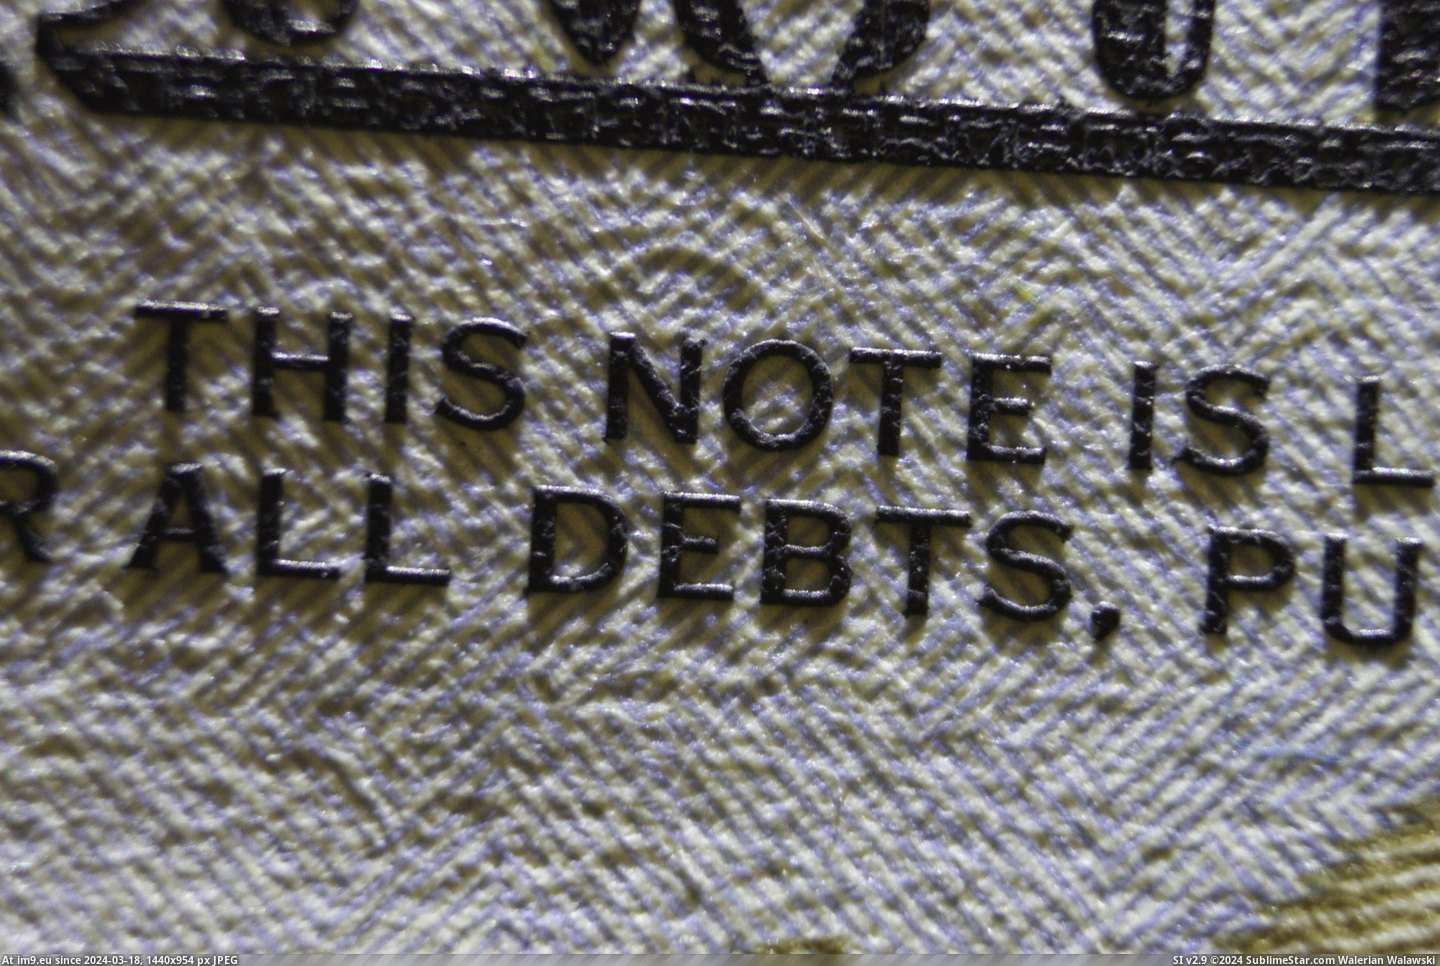 #Bill #Ink #Dollar [Pics] Ink thickness on a US dollar bill Pic. (Bild von album My r/PICS favs))